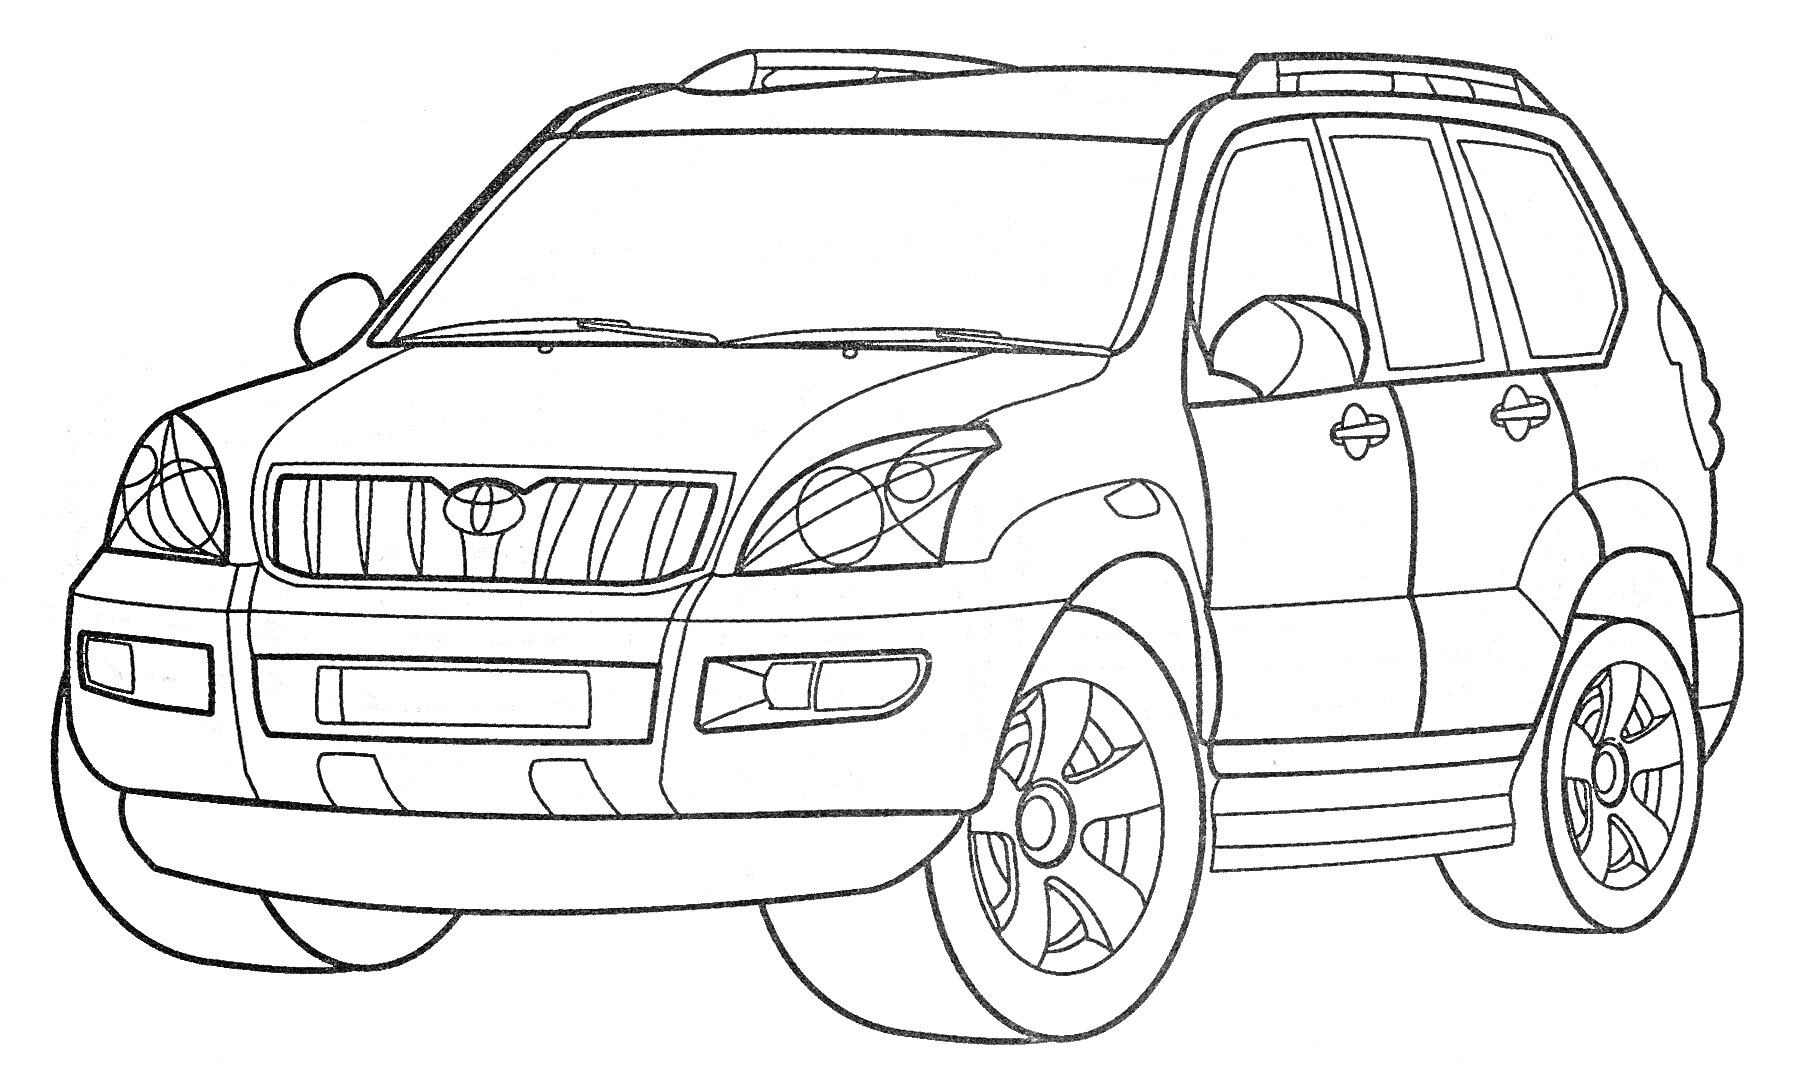 Тойота внедорожник с четырьмя дверями, решеткой радиатора, фарами, зеркалами заднего вида и колесами